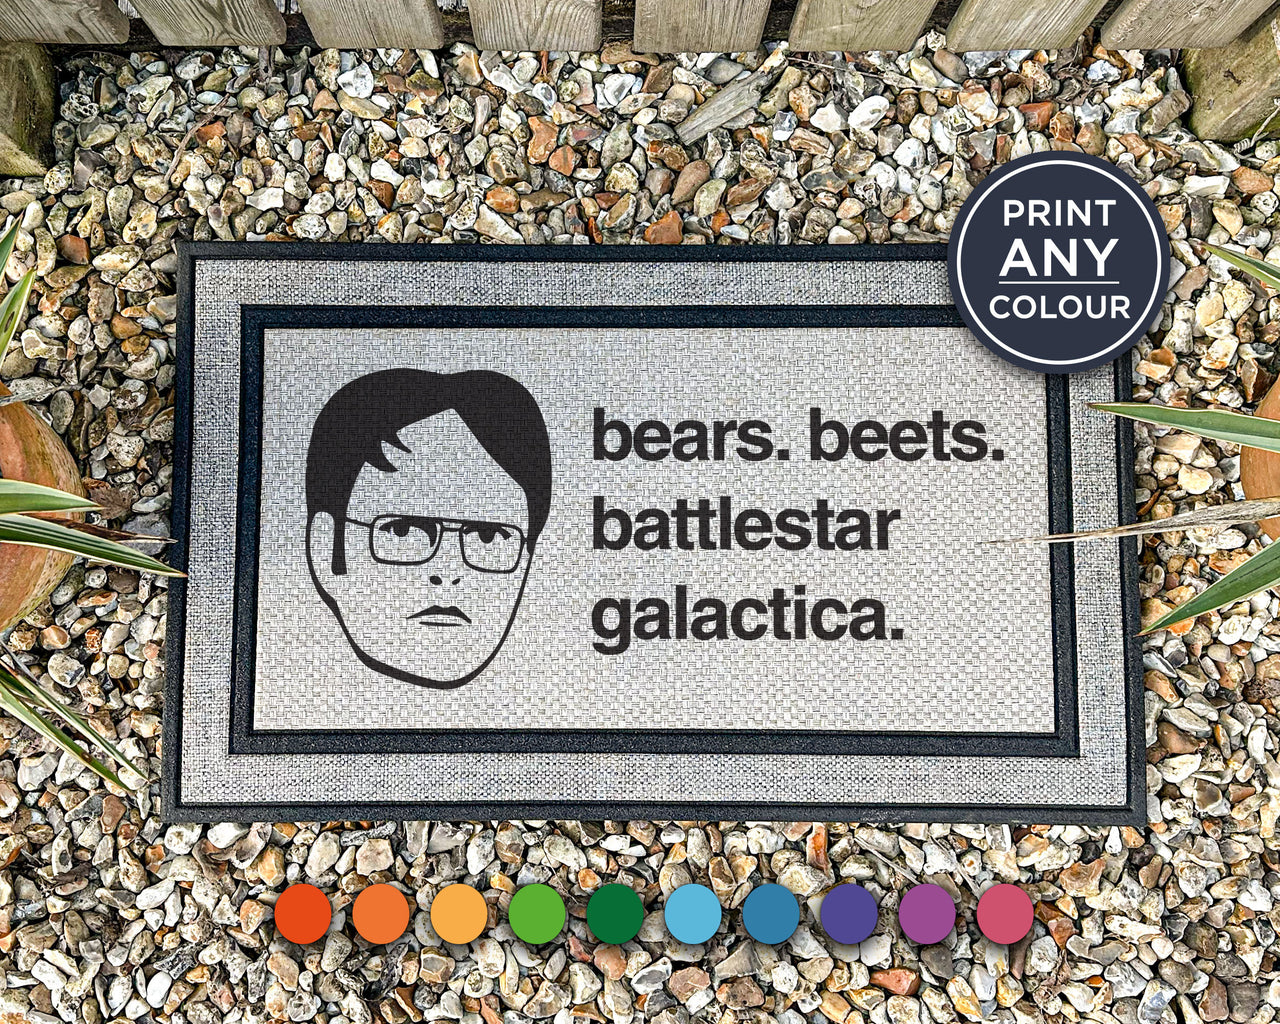 Dwight Schrute Quote Doormat - Bears Beets Battlestar Galactica